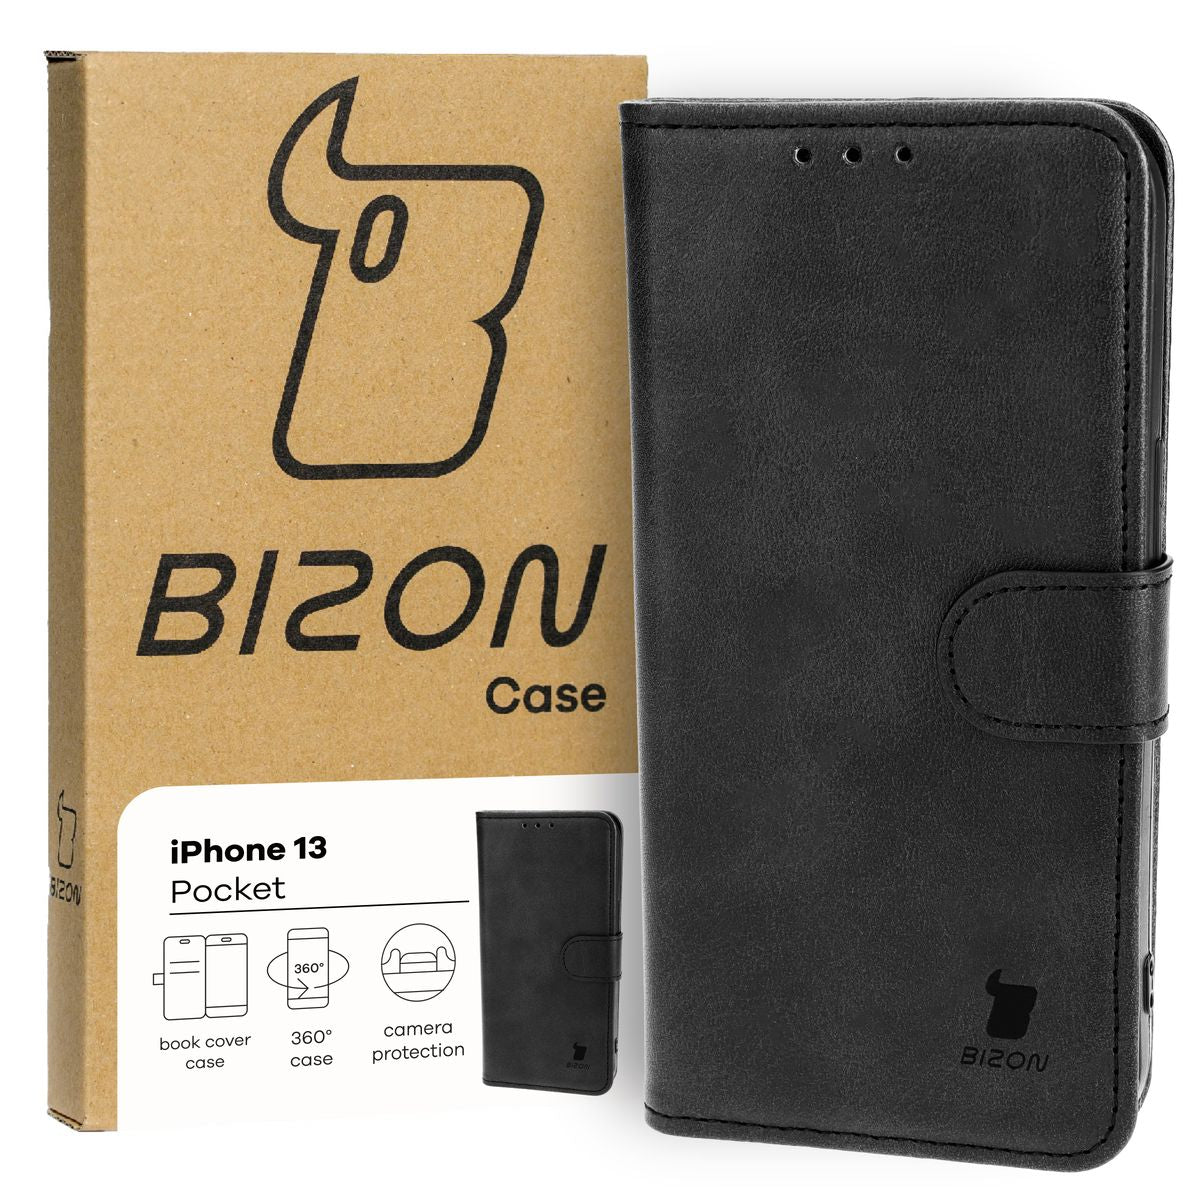 Schutzhülle für iPhone 13, Bizon Case Pocket, Schwarz